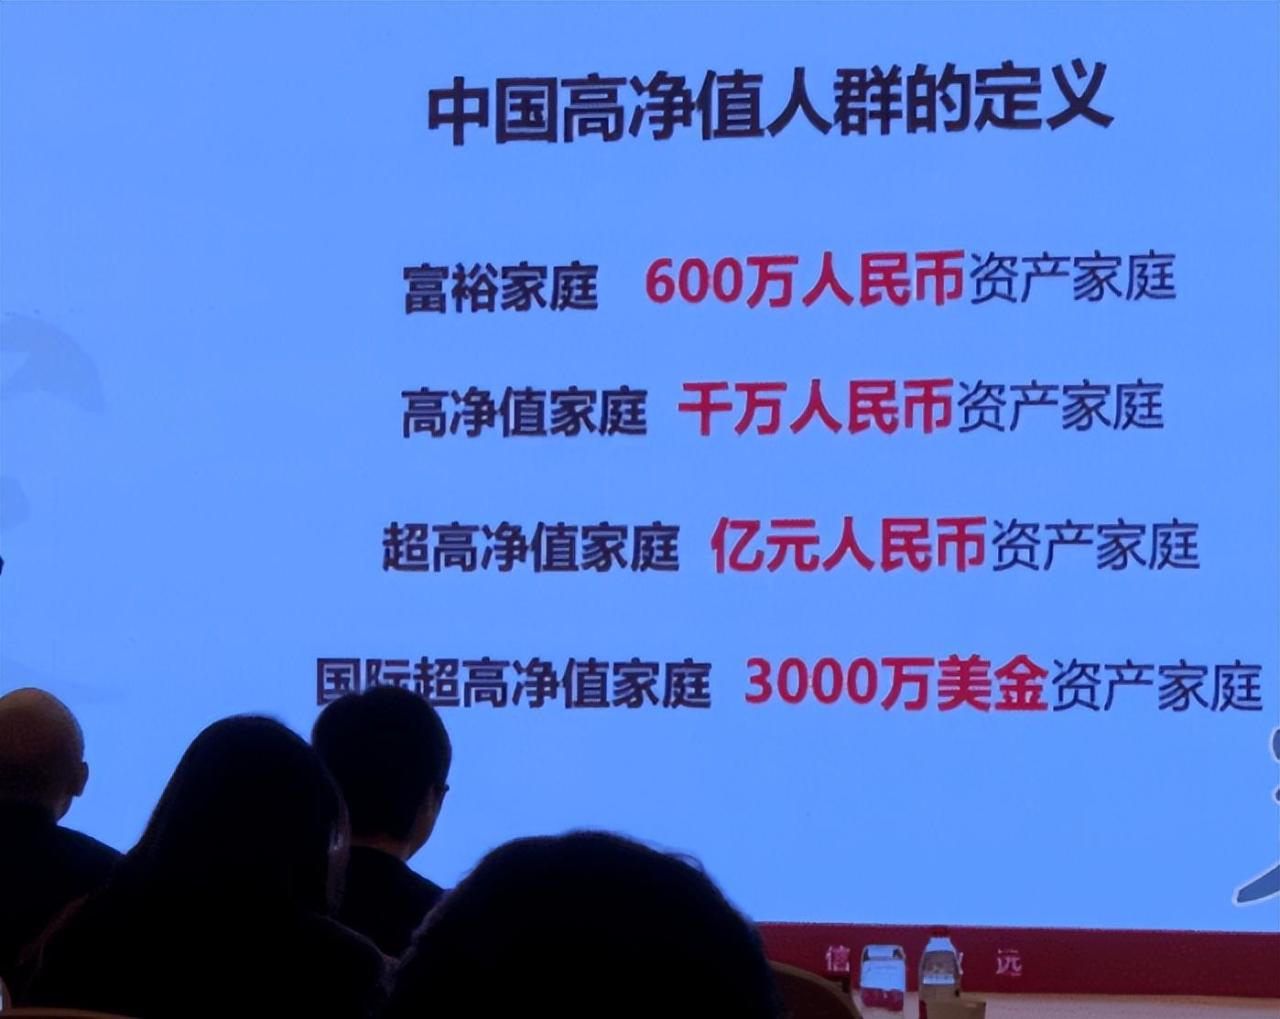 中国千万资产家庭达206万户 中国拥有千万人民币家庭净资产的高净值家庭规模达到206万户